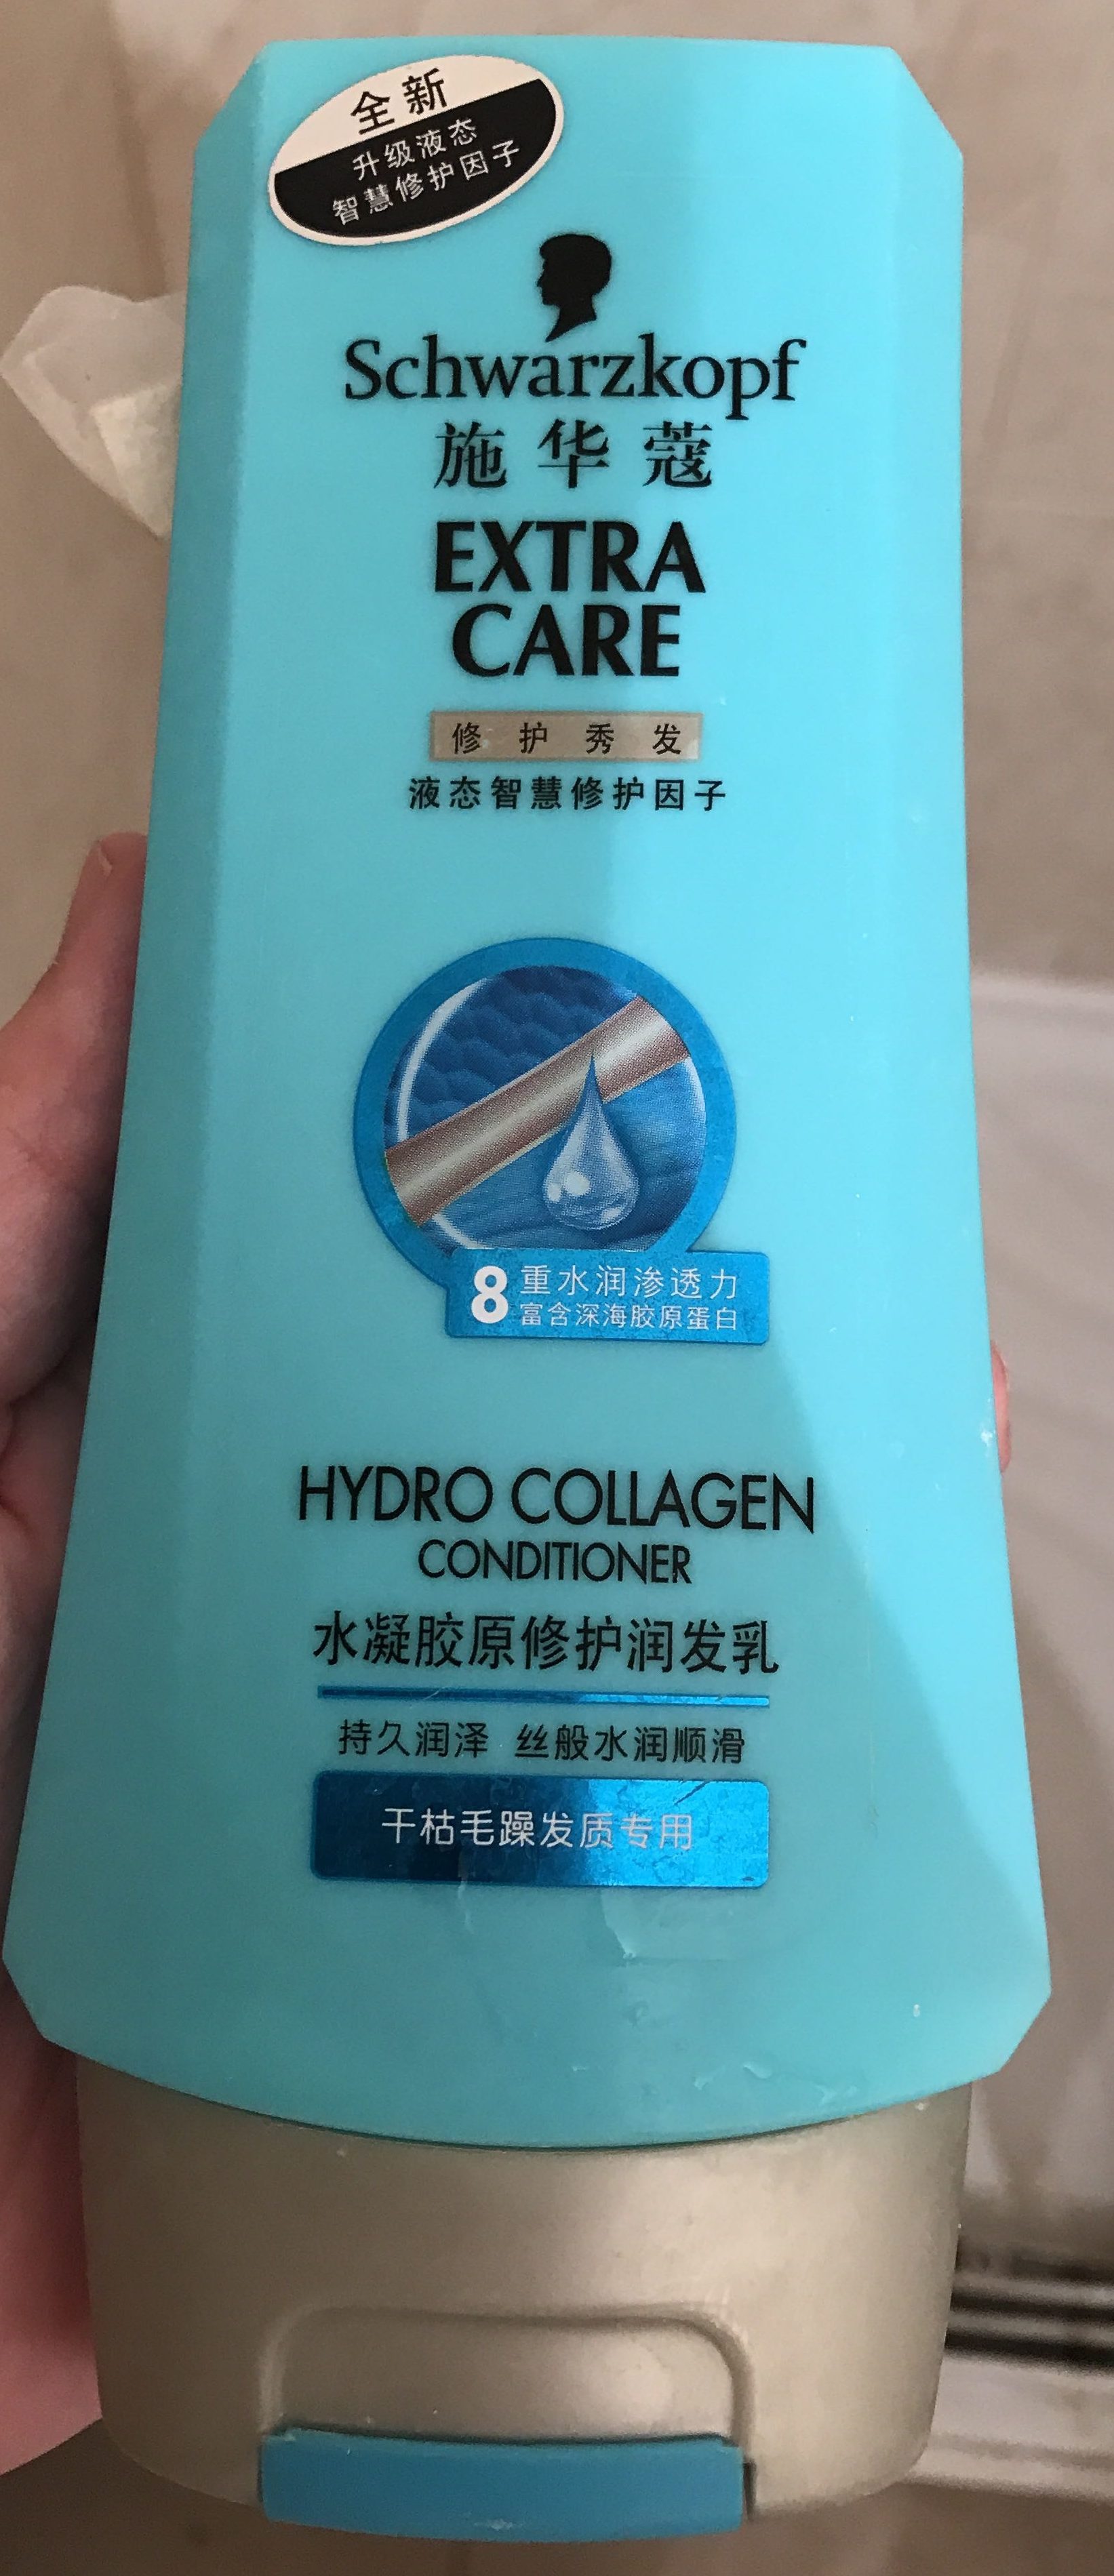 Extra Care 修护润发 Hydro Collagen Conditioner - Produto - zh